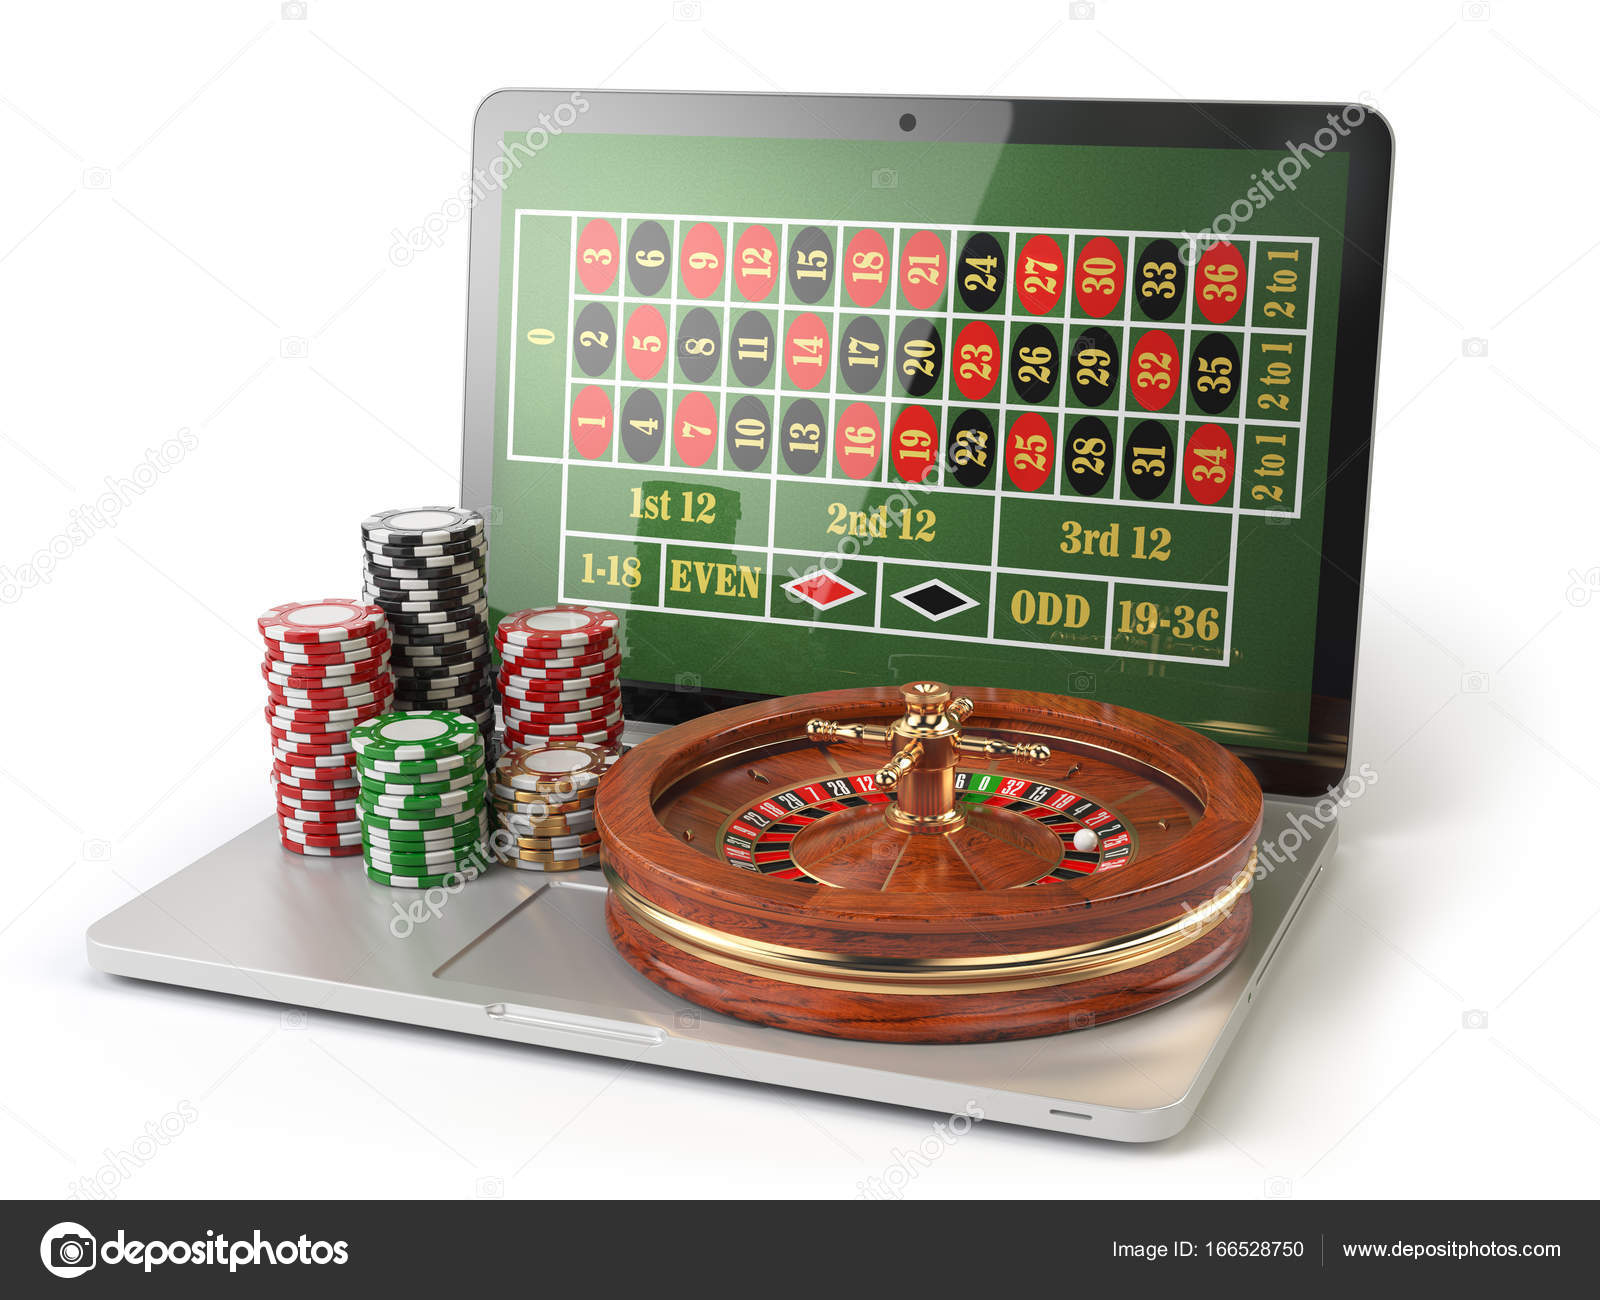 Is casino.netbet.com legit